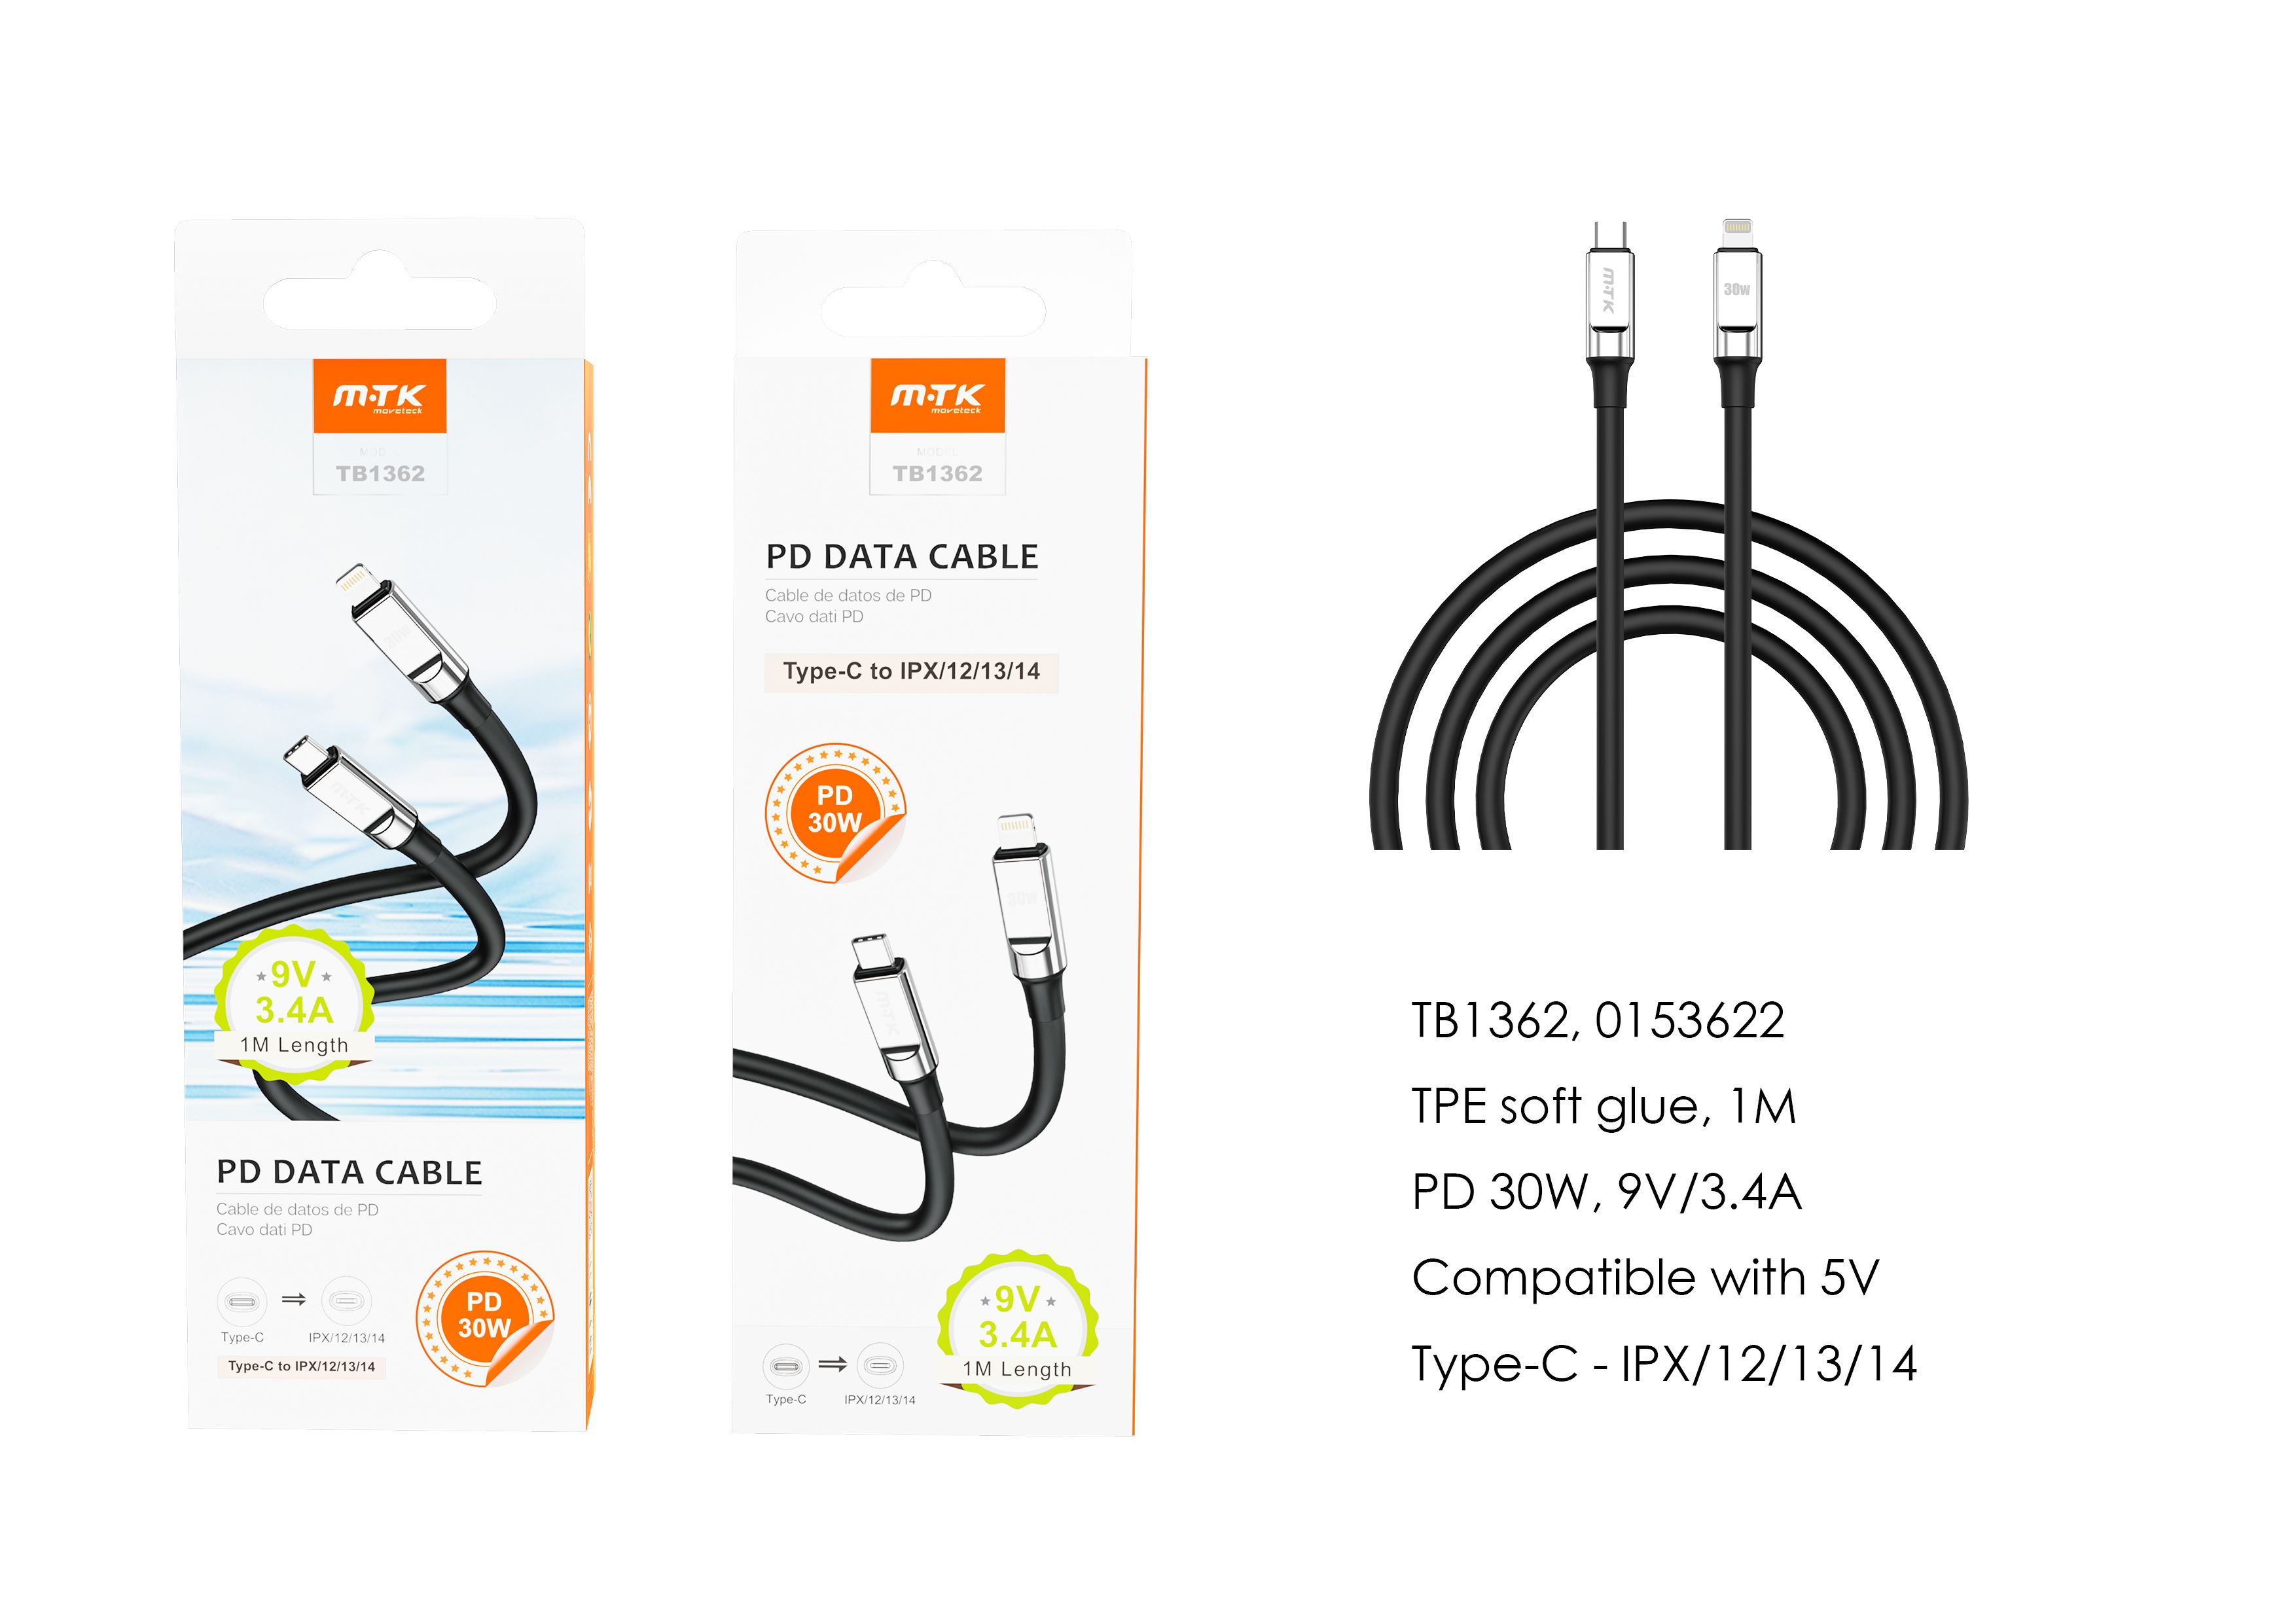 TB1362 NE Cable de datos Cyril para Type-C a Lightning , Carga Rapida PD, 30W/9V/3.4A, 1M, Negro